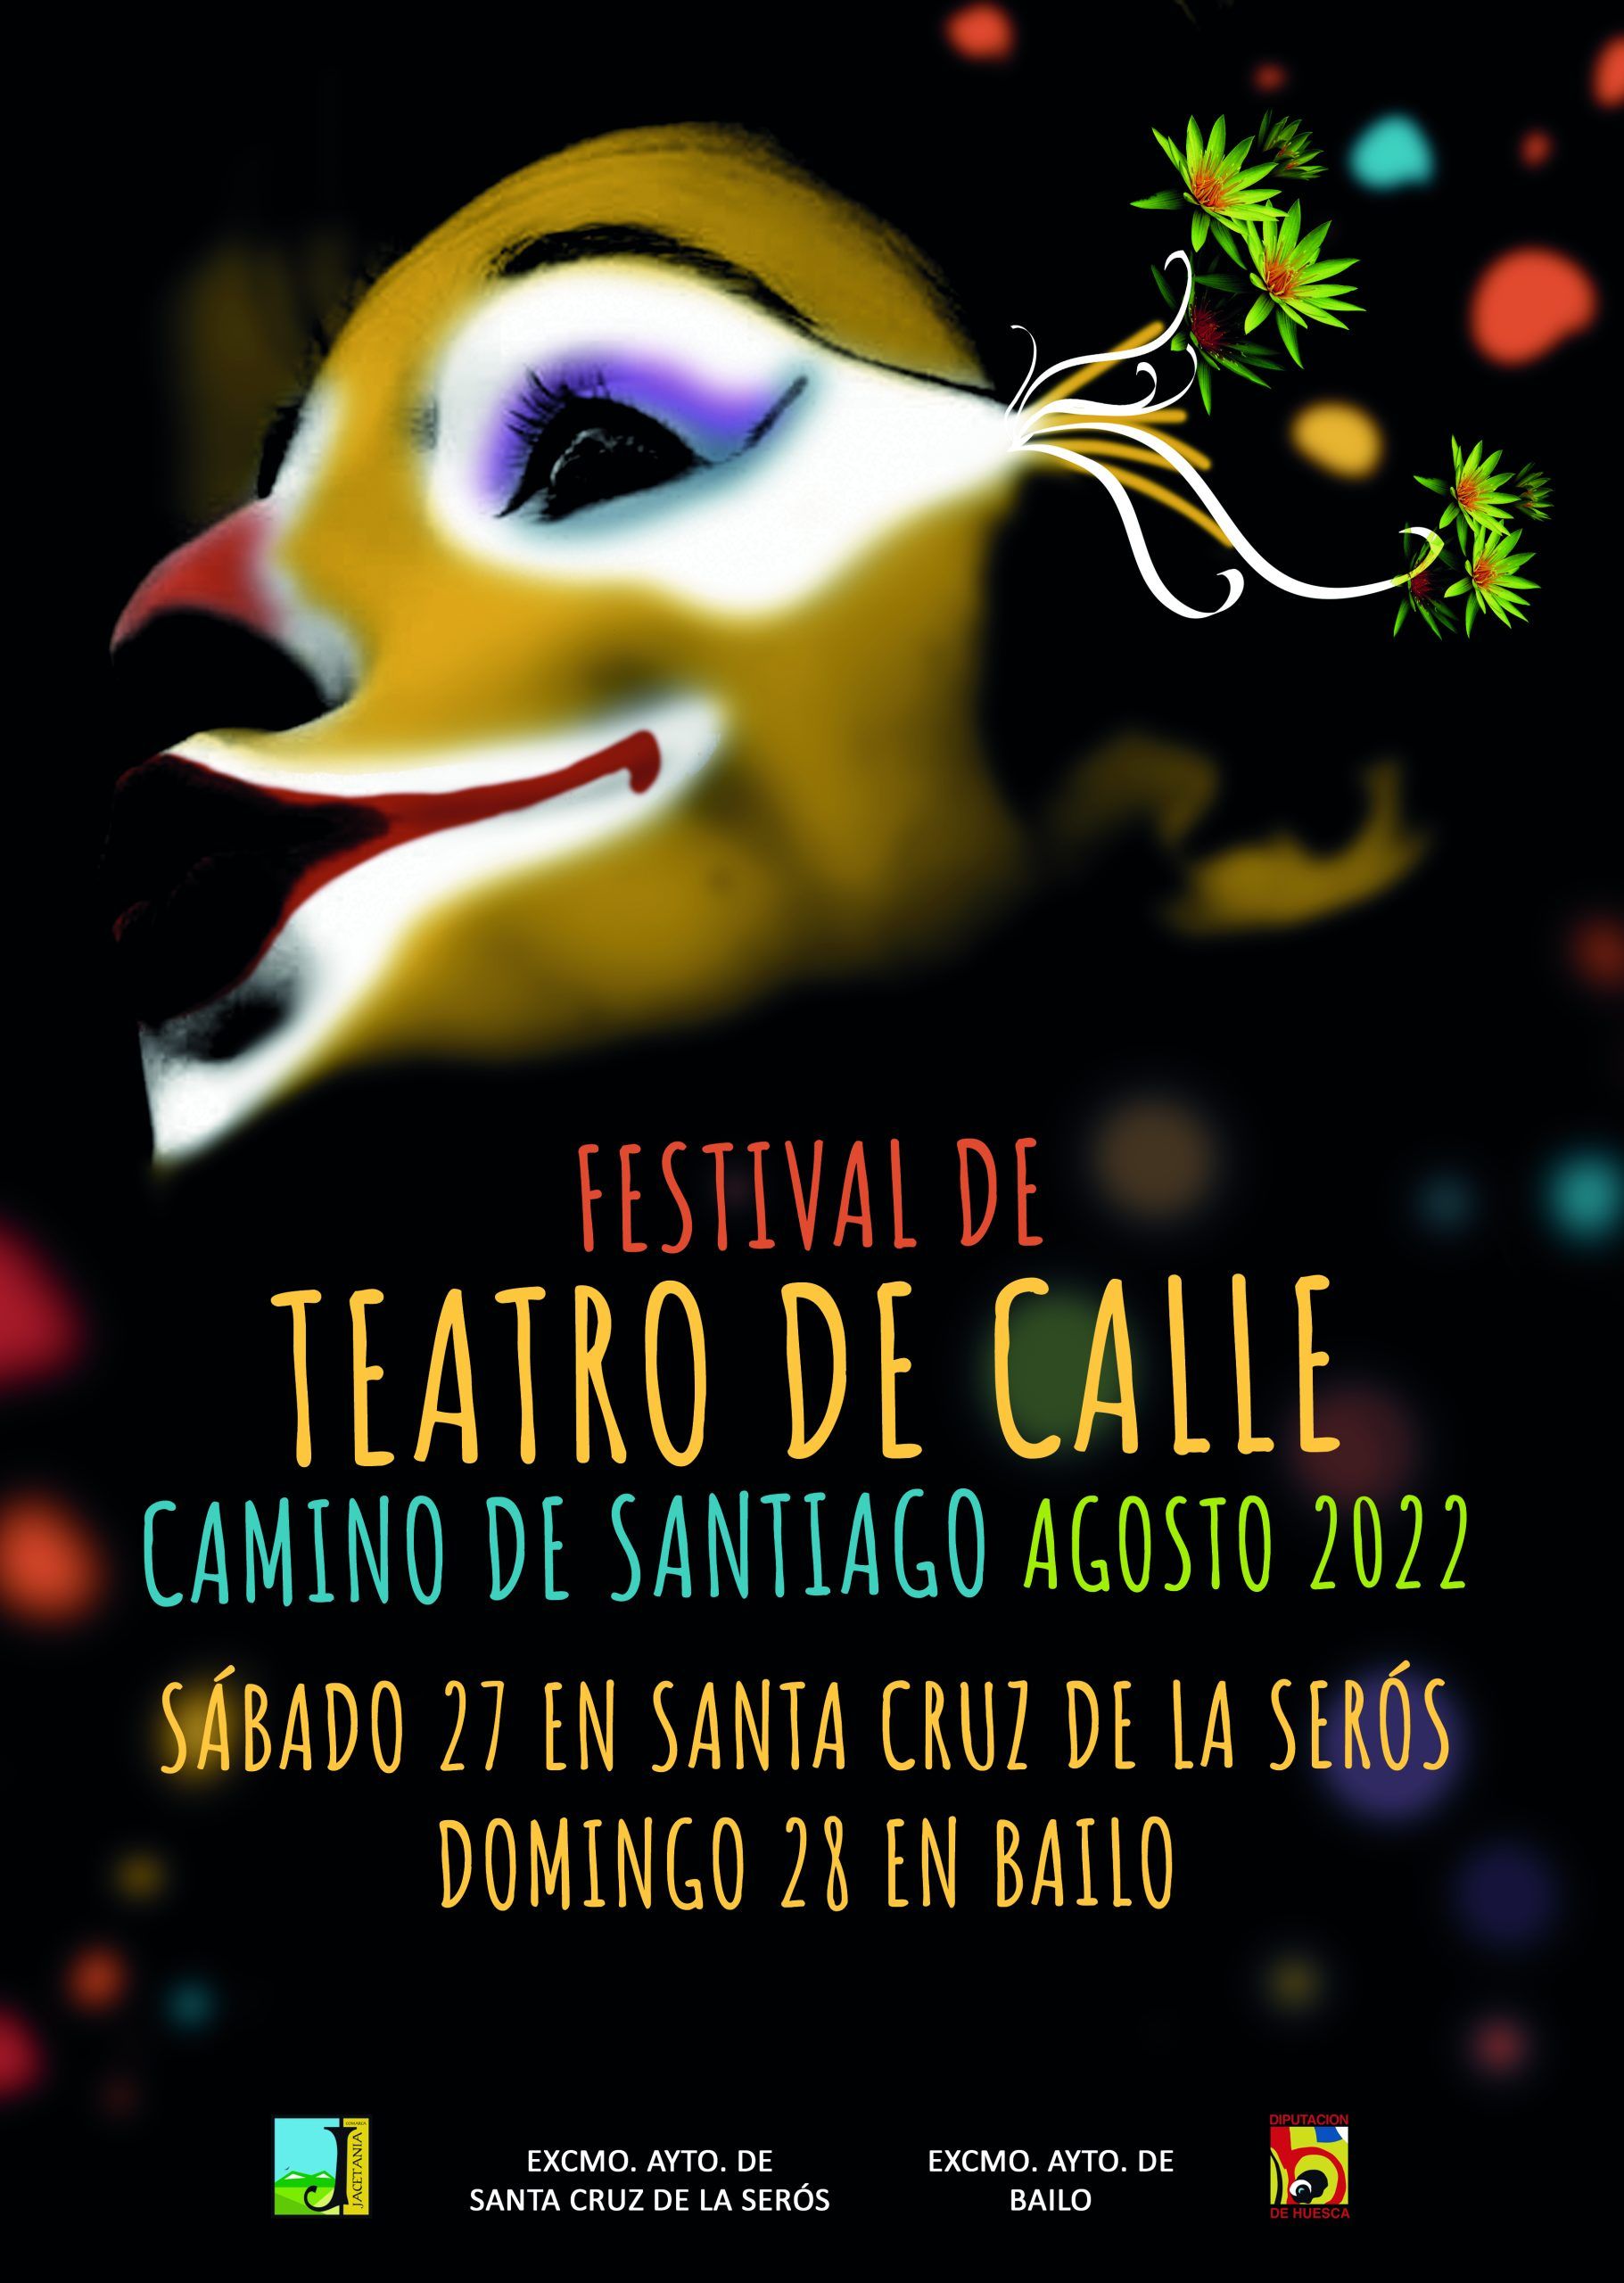 Festival de Teatro de calle